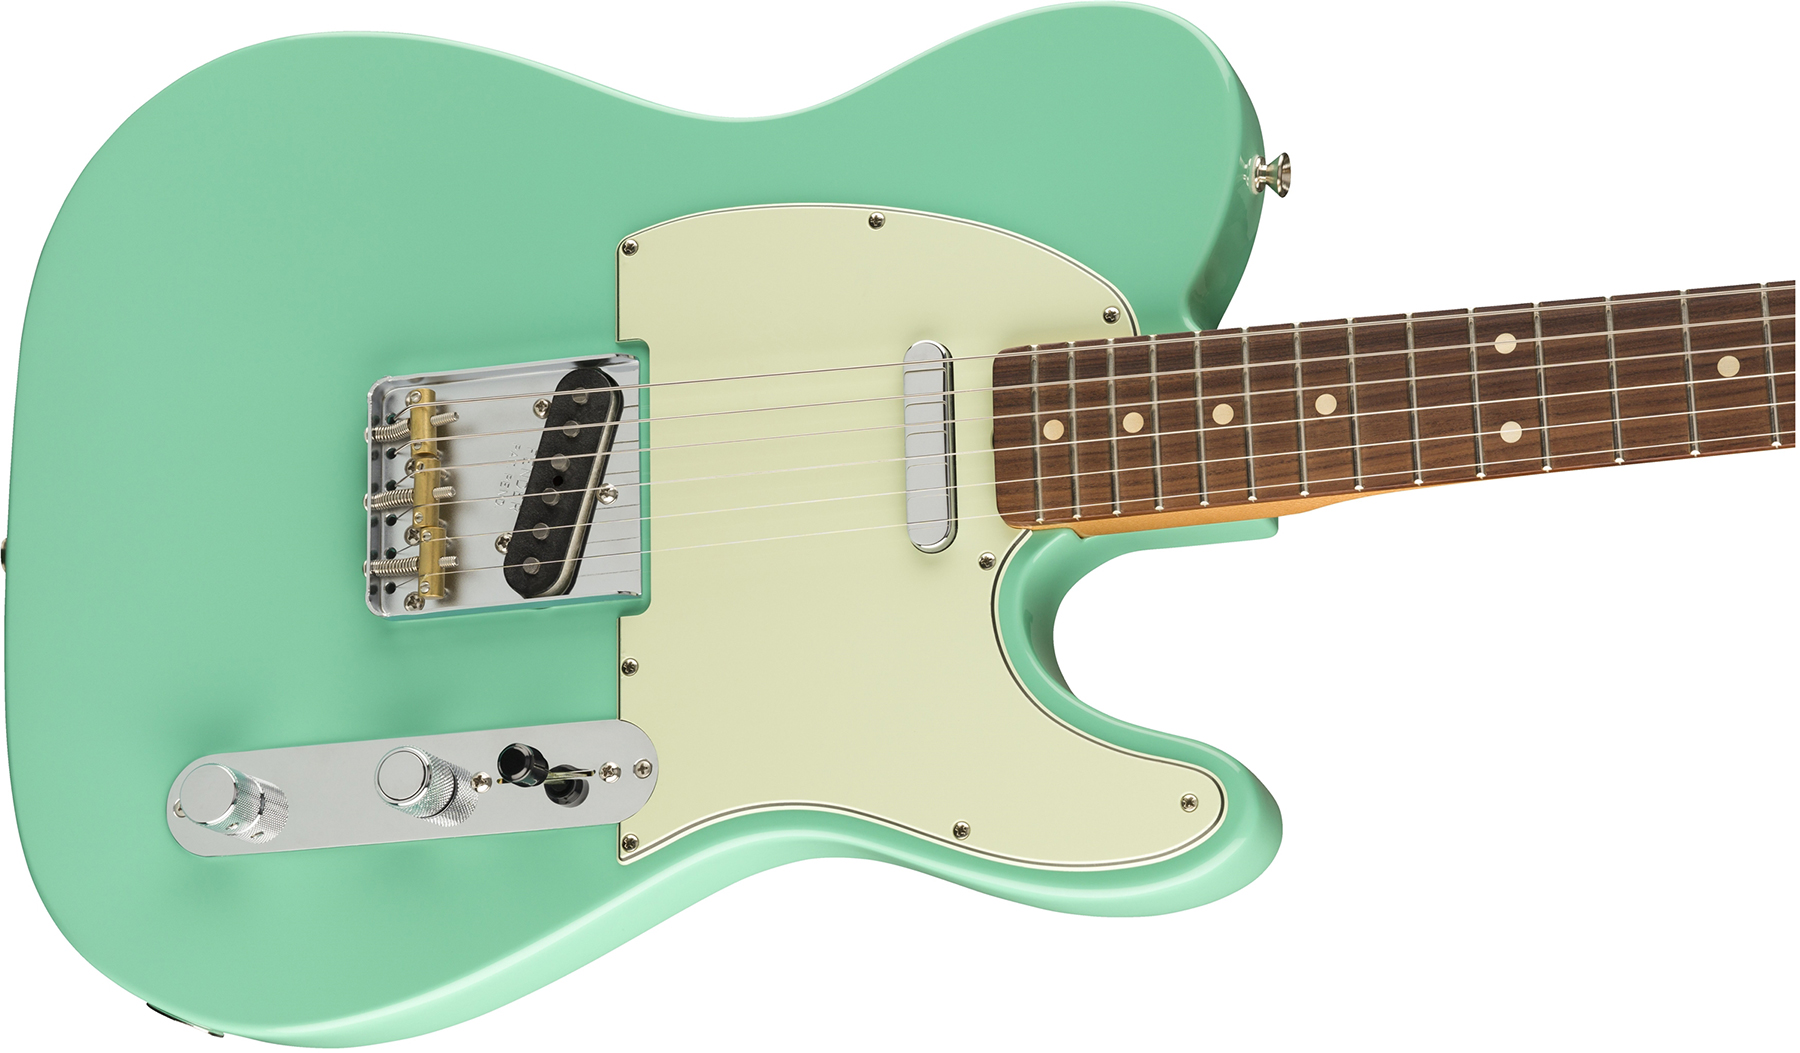 Fender Tele 60s Vintera Modified Mex Pf - Seafoam Green - Guitarra eléctrica con forma de tel - Variation 2